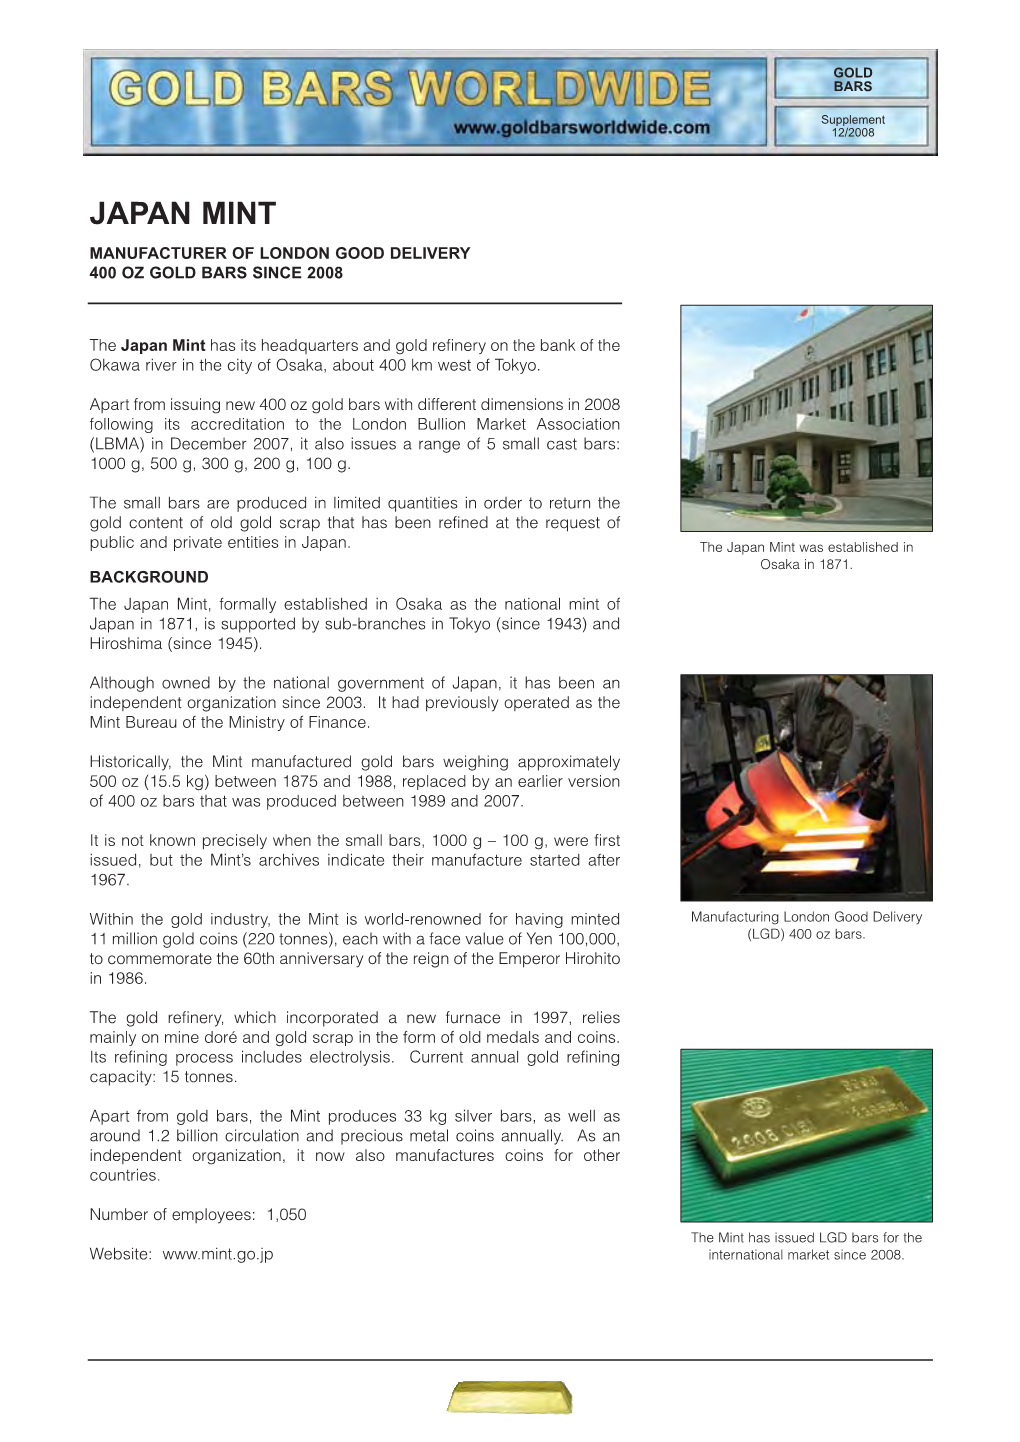 Japan Mint Manufacturer of London Good Delivery 400 Oz Gold Bars Since 2008